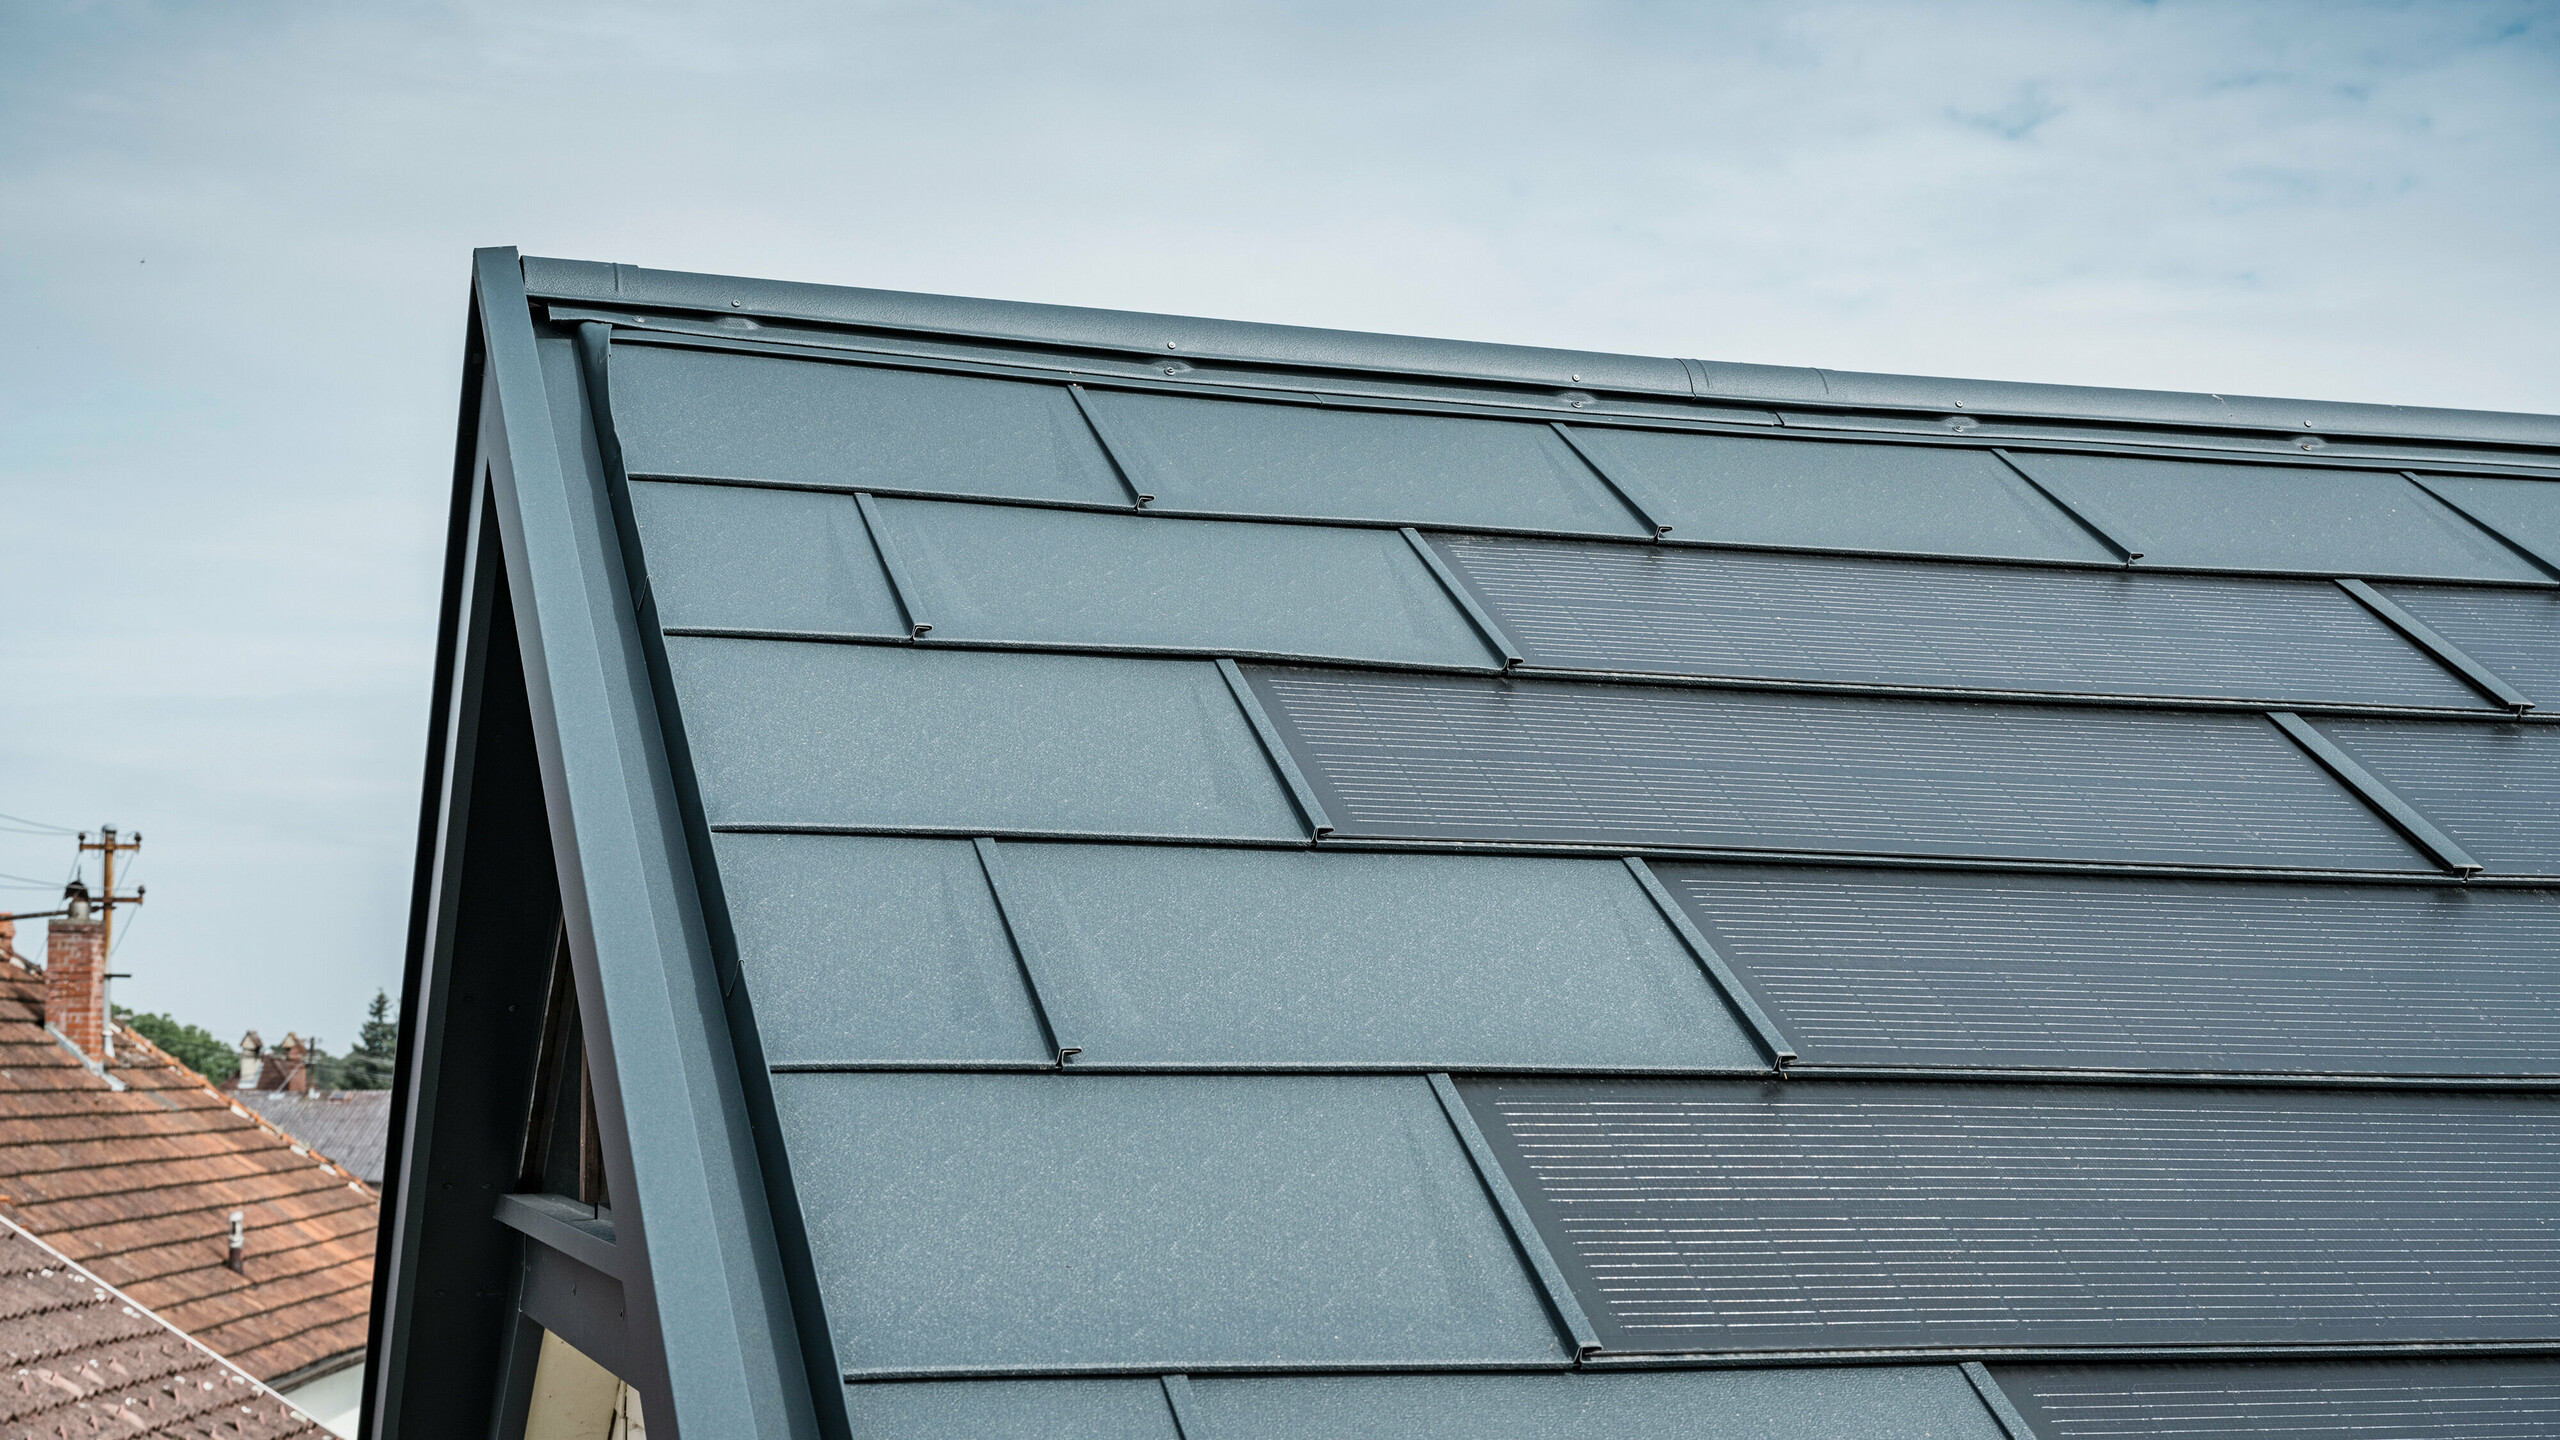 Vue détaillée du toit d'une maison équipée de la tuile solaire innovante PREFA. Les tuiles avec cellules photovoltaïques intégrées sont présentées dans un élégant anthracite. La surface homogène s'intègre parfaitement dans le toit et assure ainsi un aspect moderne et épuré. Le système de toiture innovant permet une utilisation efficace de l’énergie sans compromettre l’esthétique.